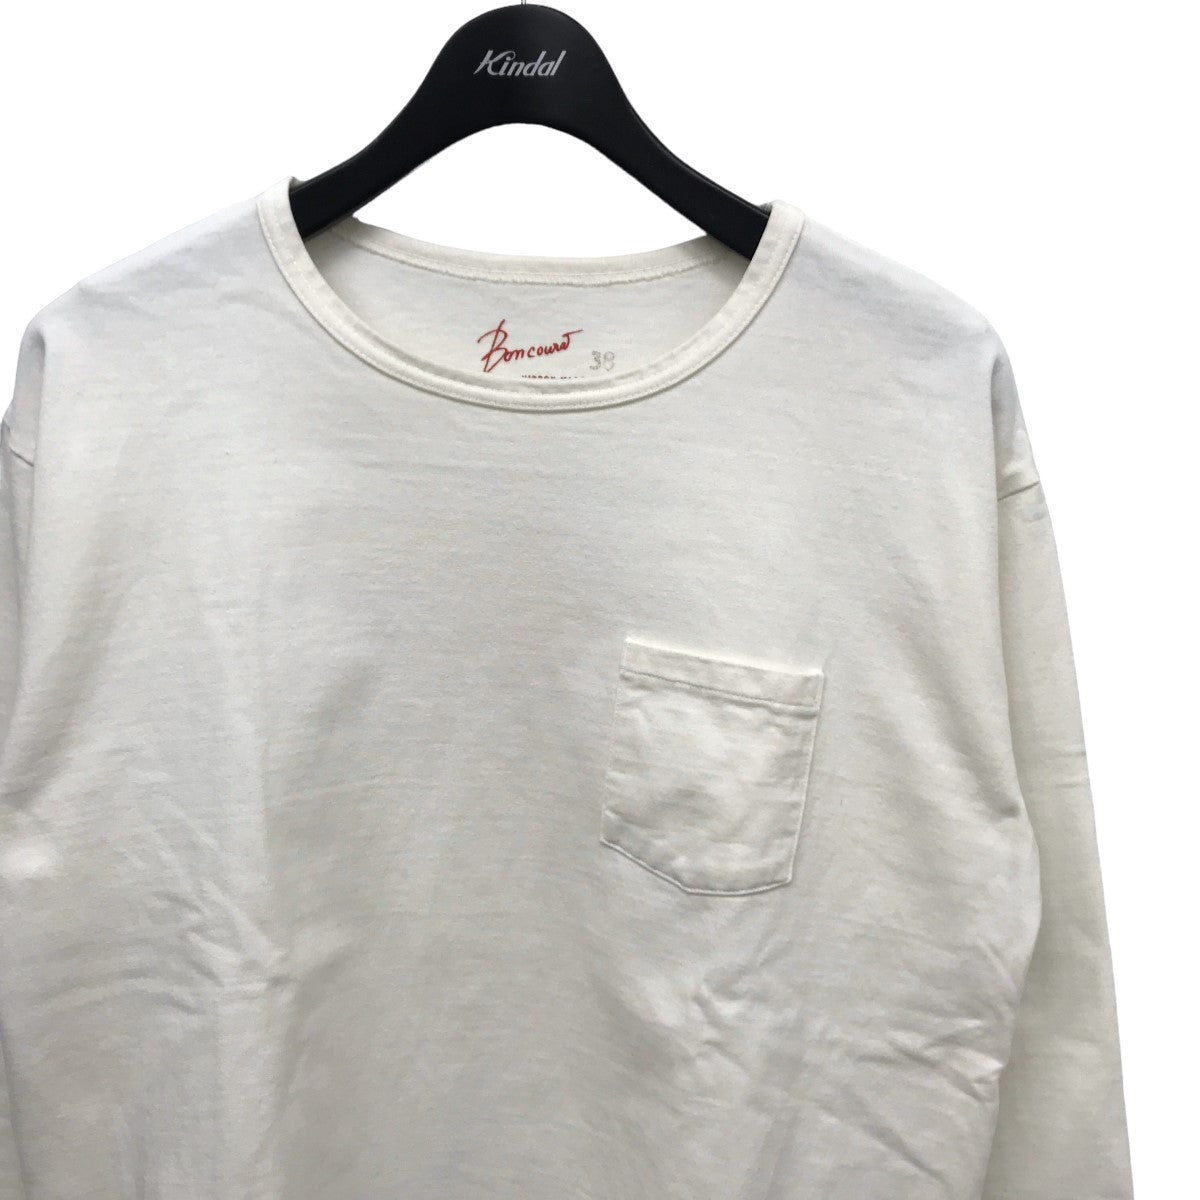 BONCOURA(ボンクラ) ロングスリーブTシャツ ホワイト サイズ 14 